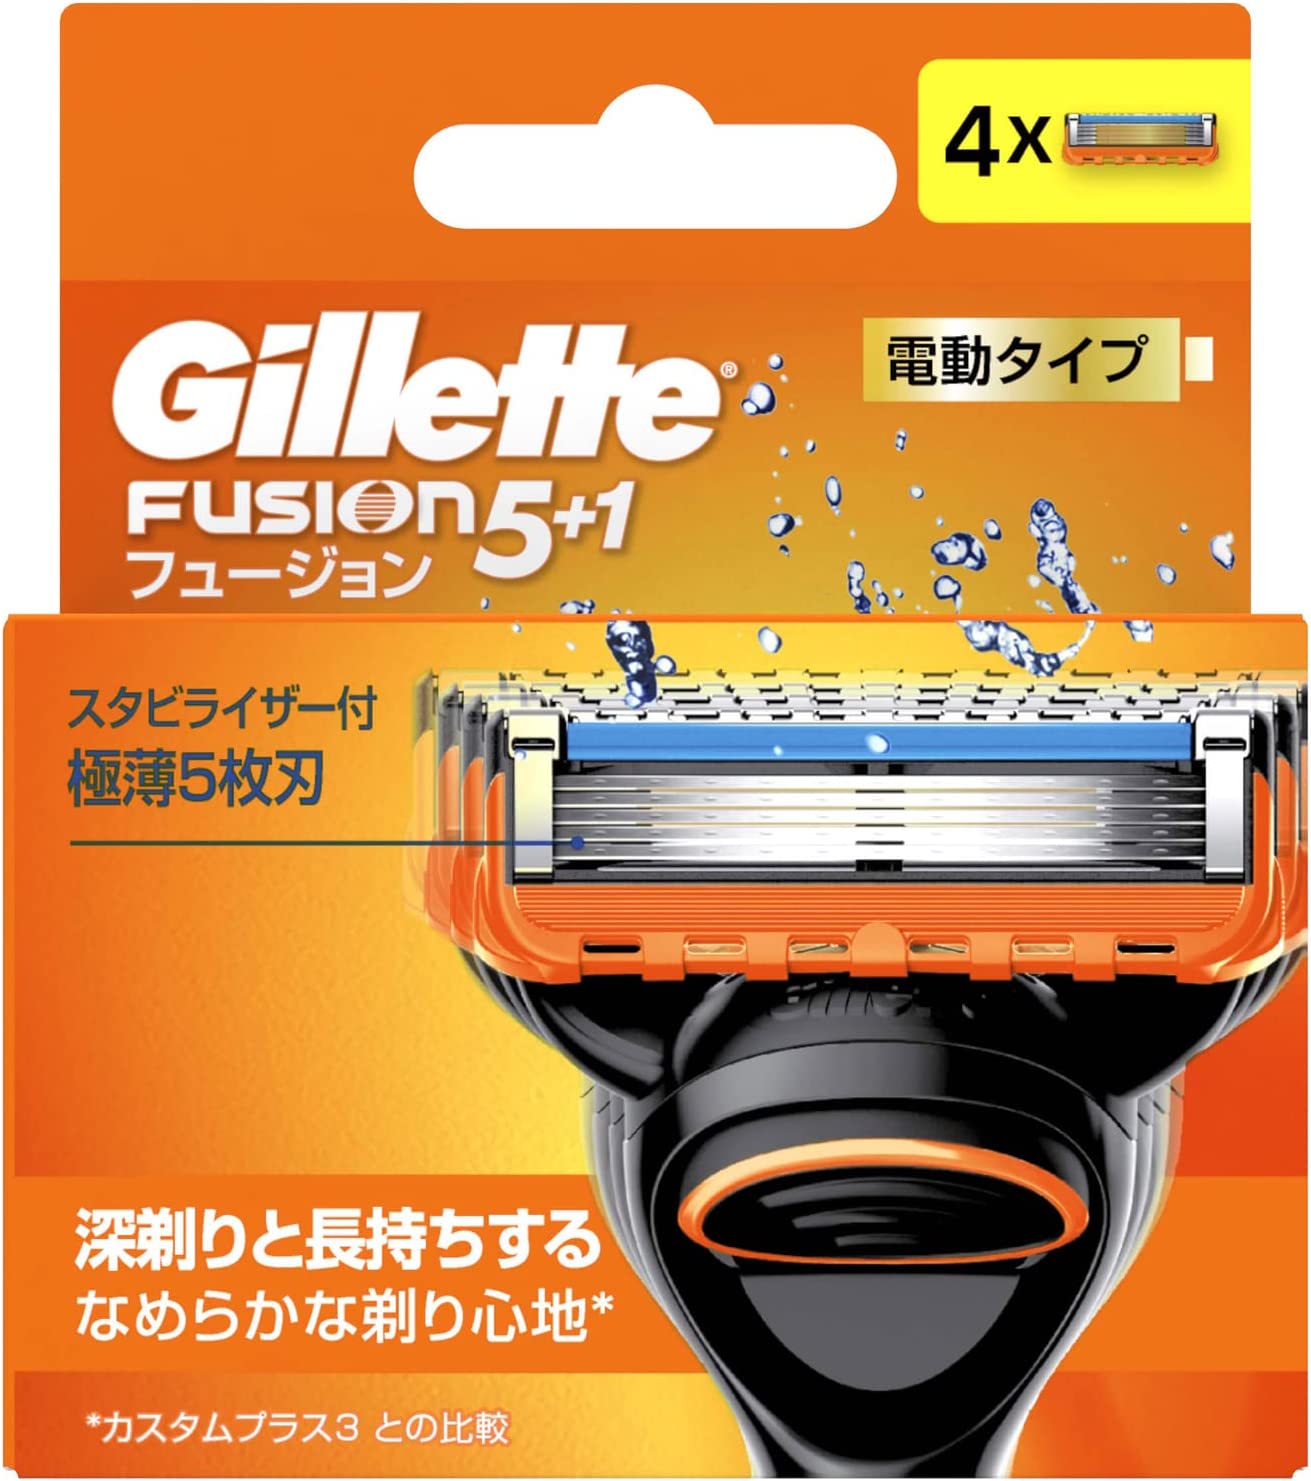 Indlejre Baglæns Beroligende middel Gillette Fusion 5+1, Electric type, Blade 4B - Japan Spread